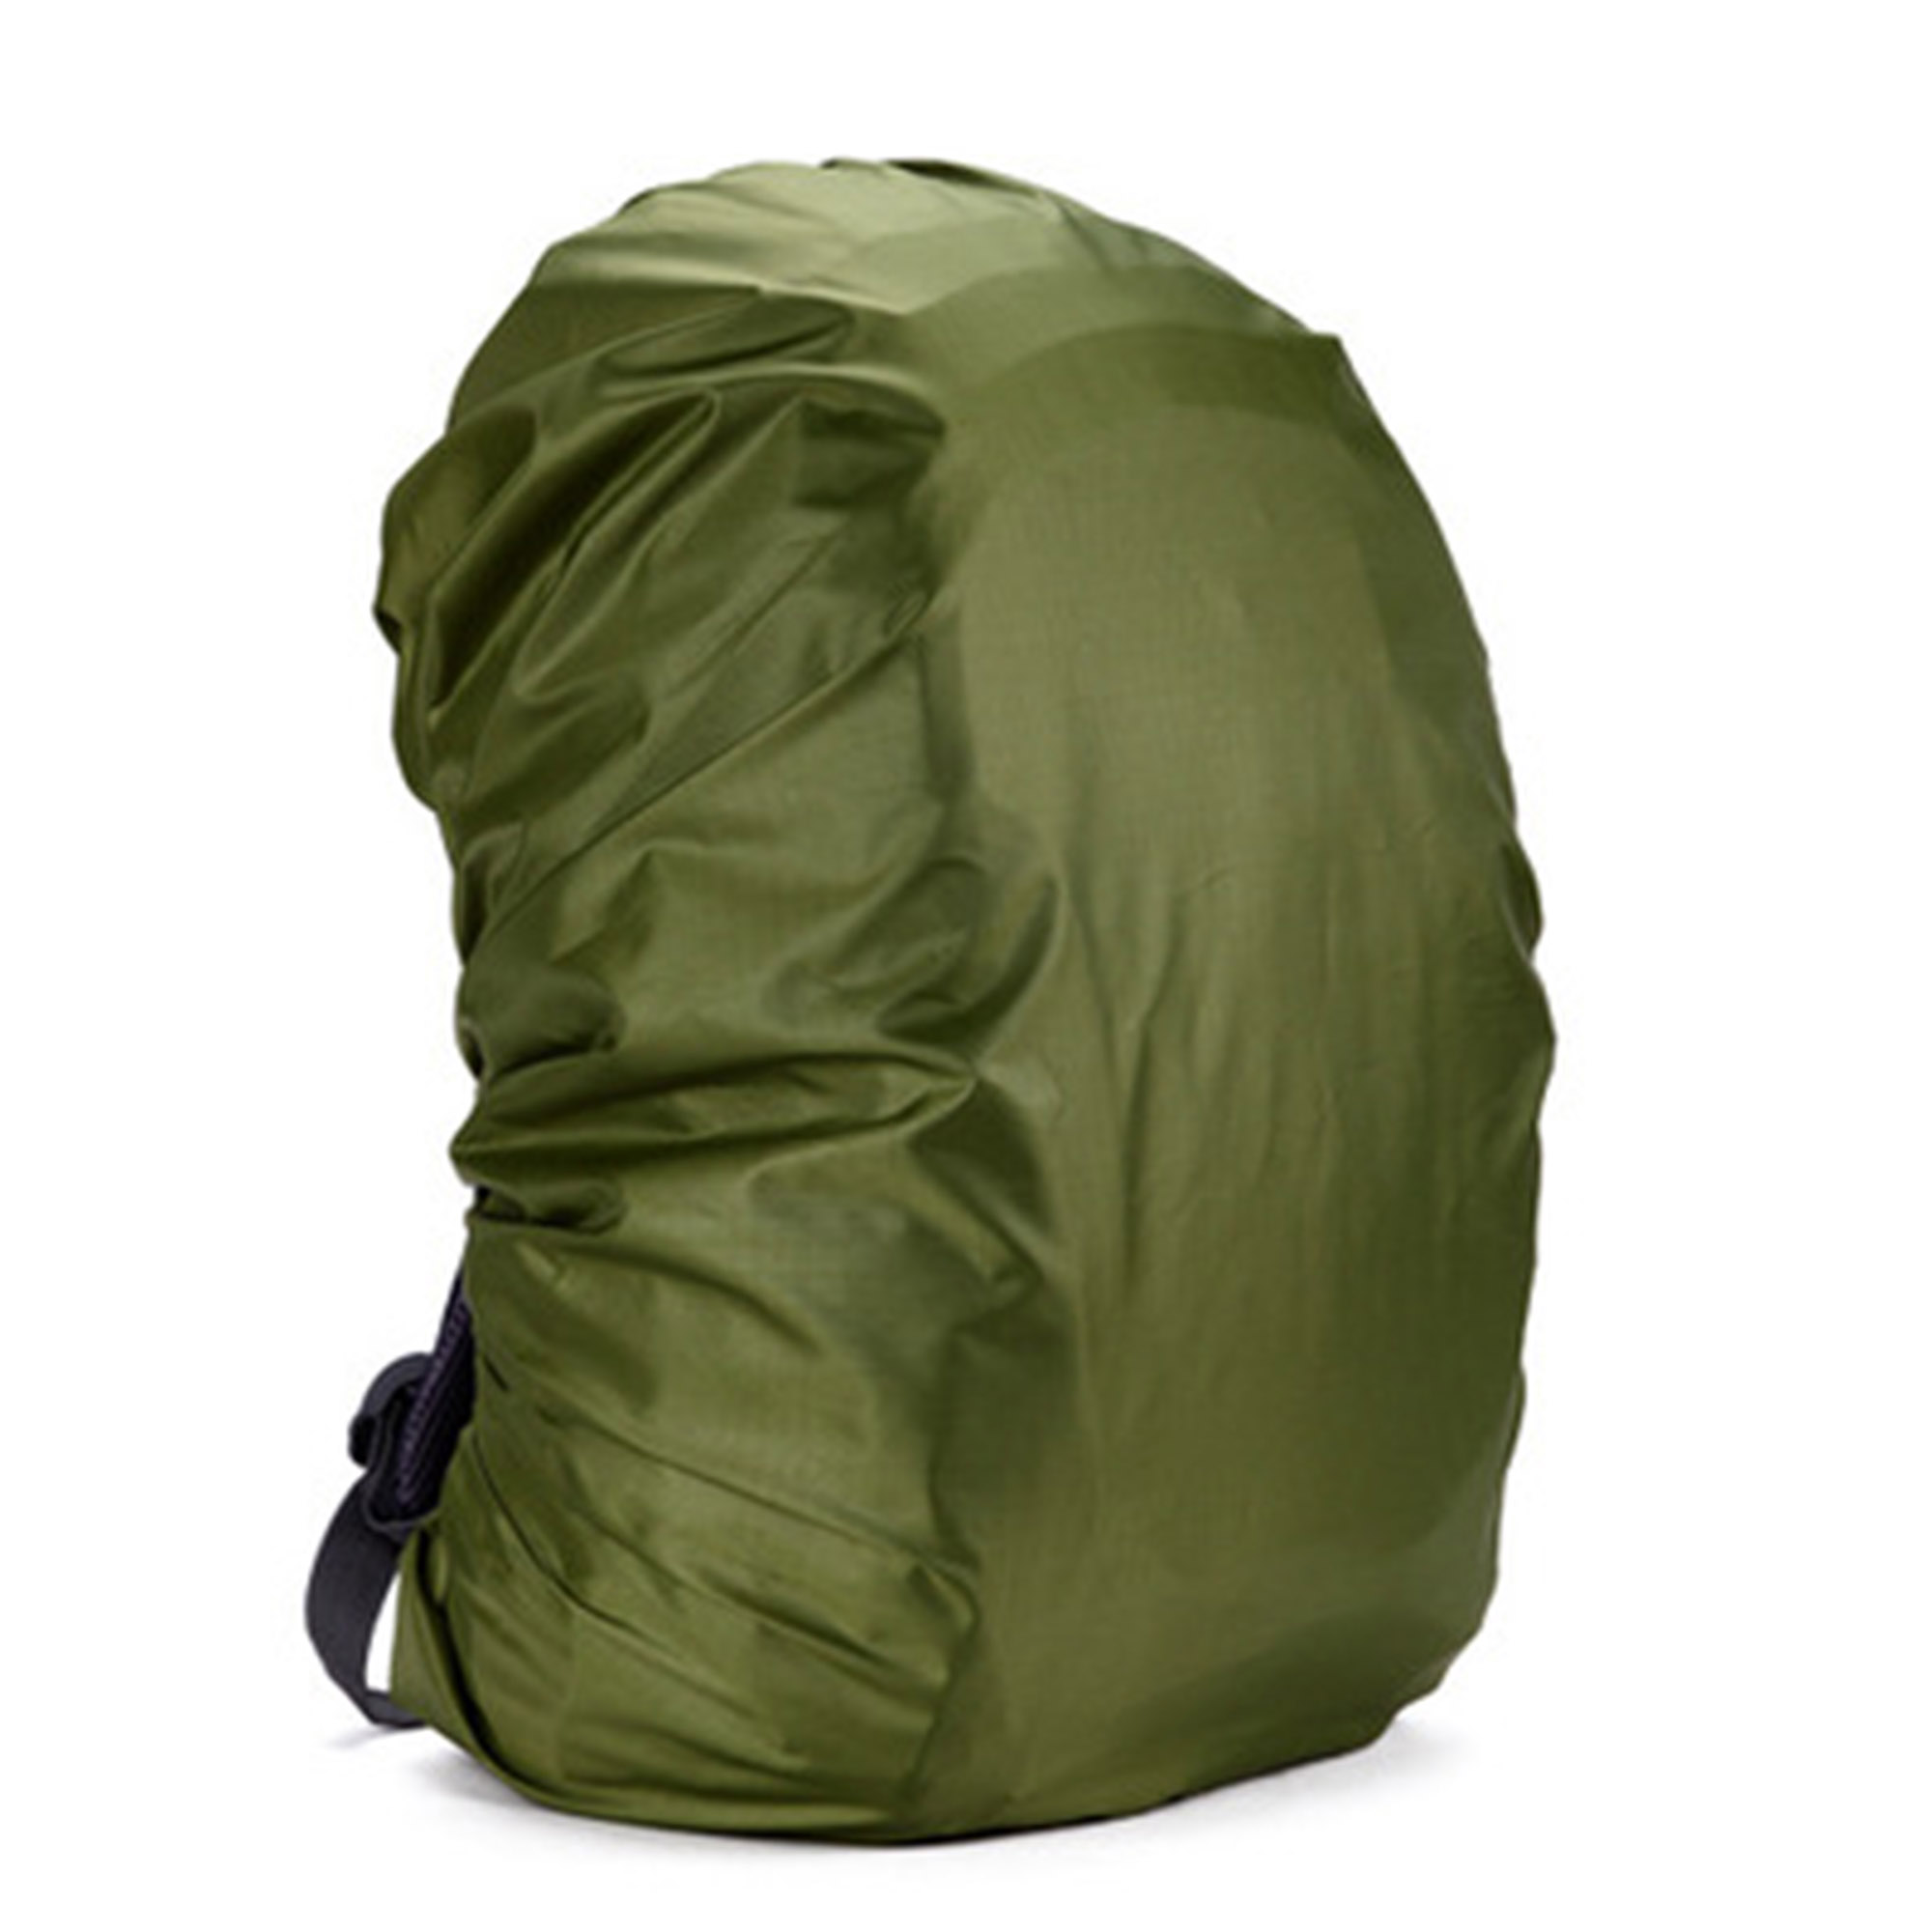 2 Packs Adjustable Waterproof Dustproof Backpack  Rain Cover Bag Case Rucksack Protector - image 5 of 5